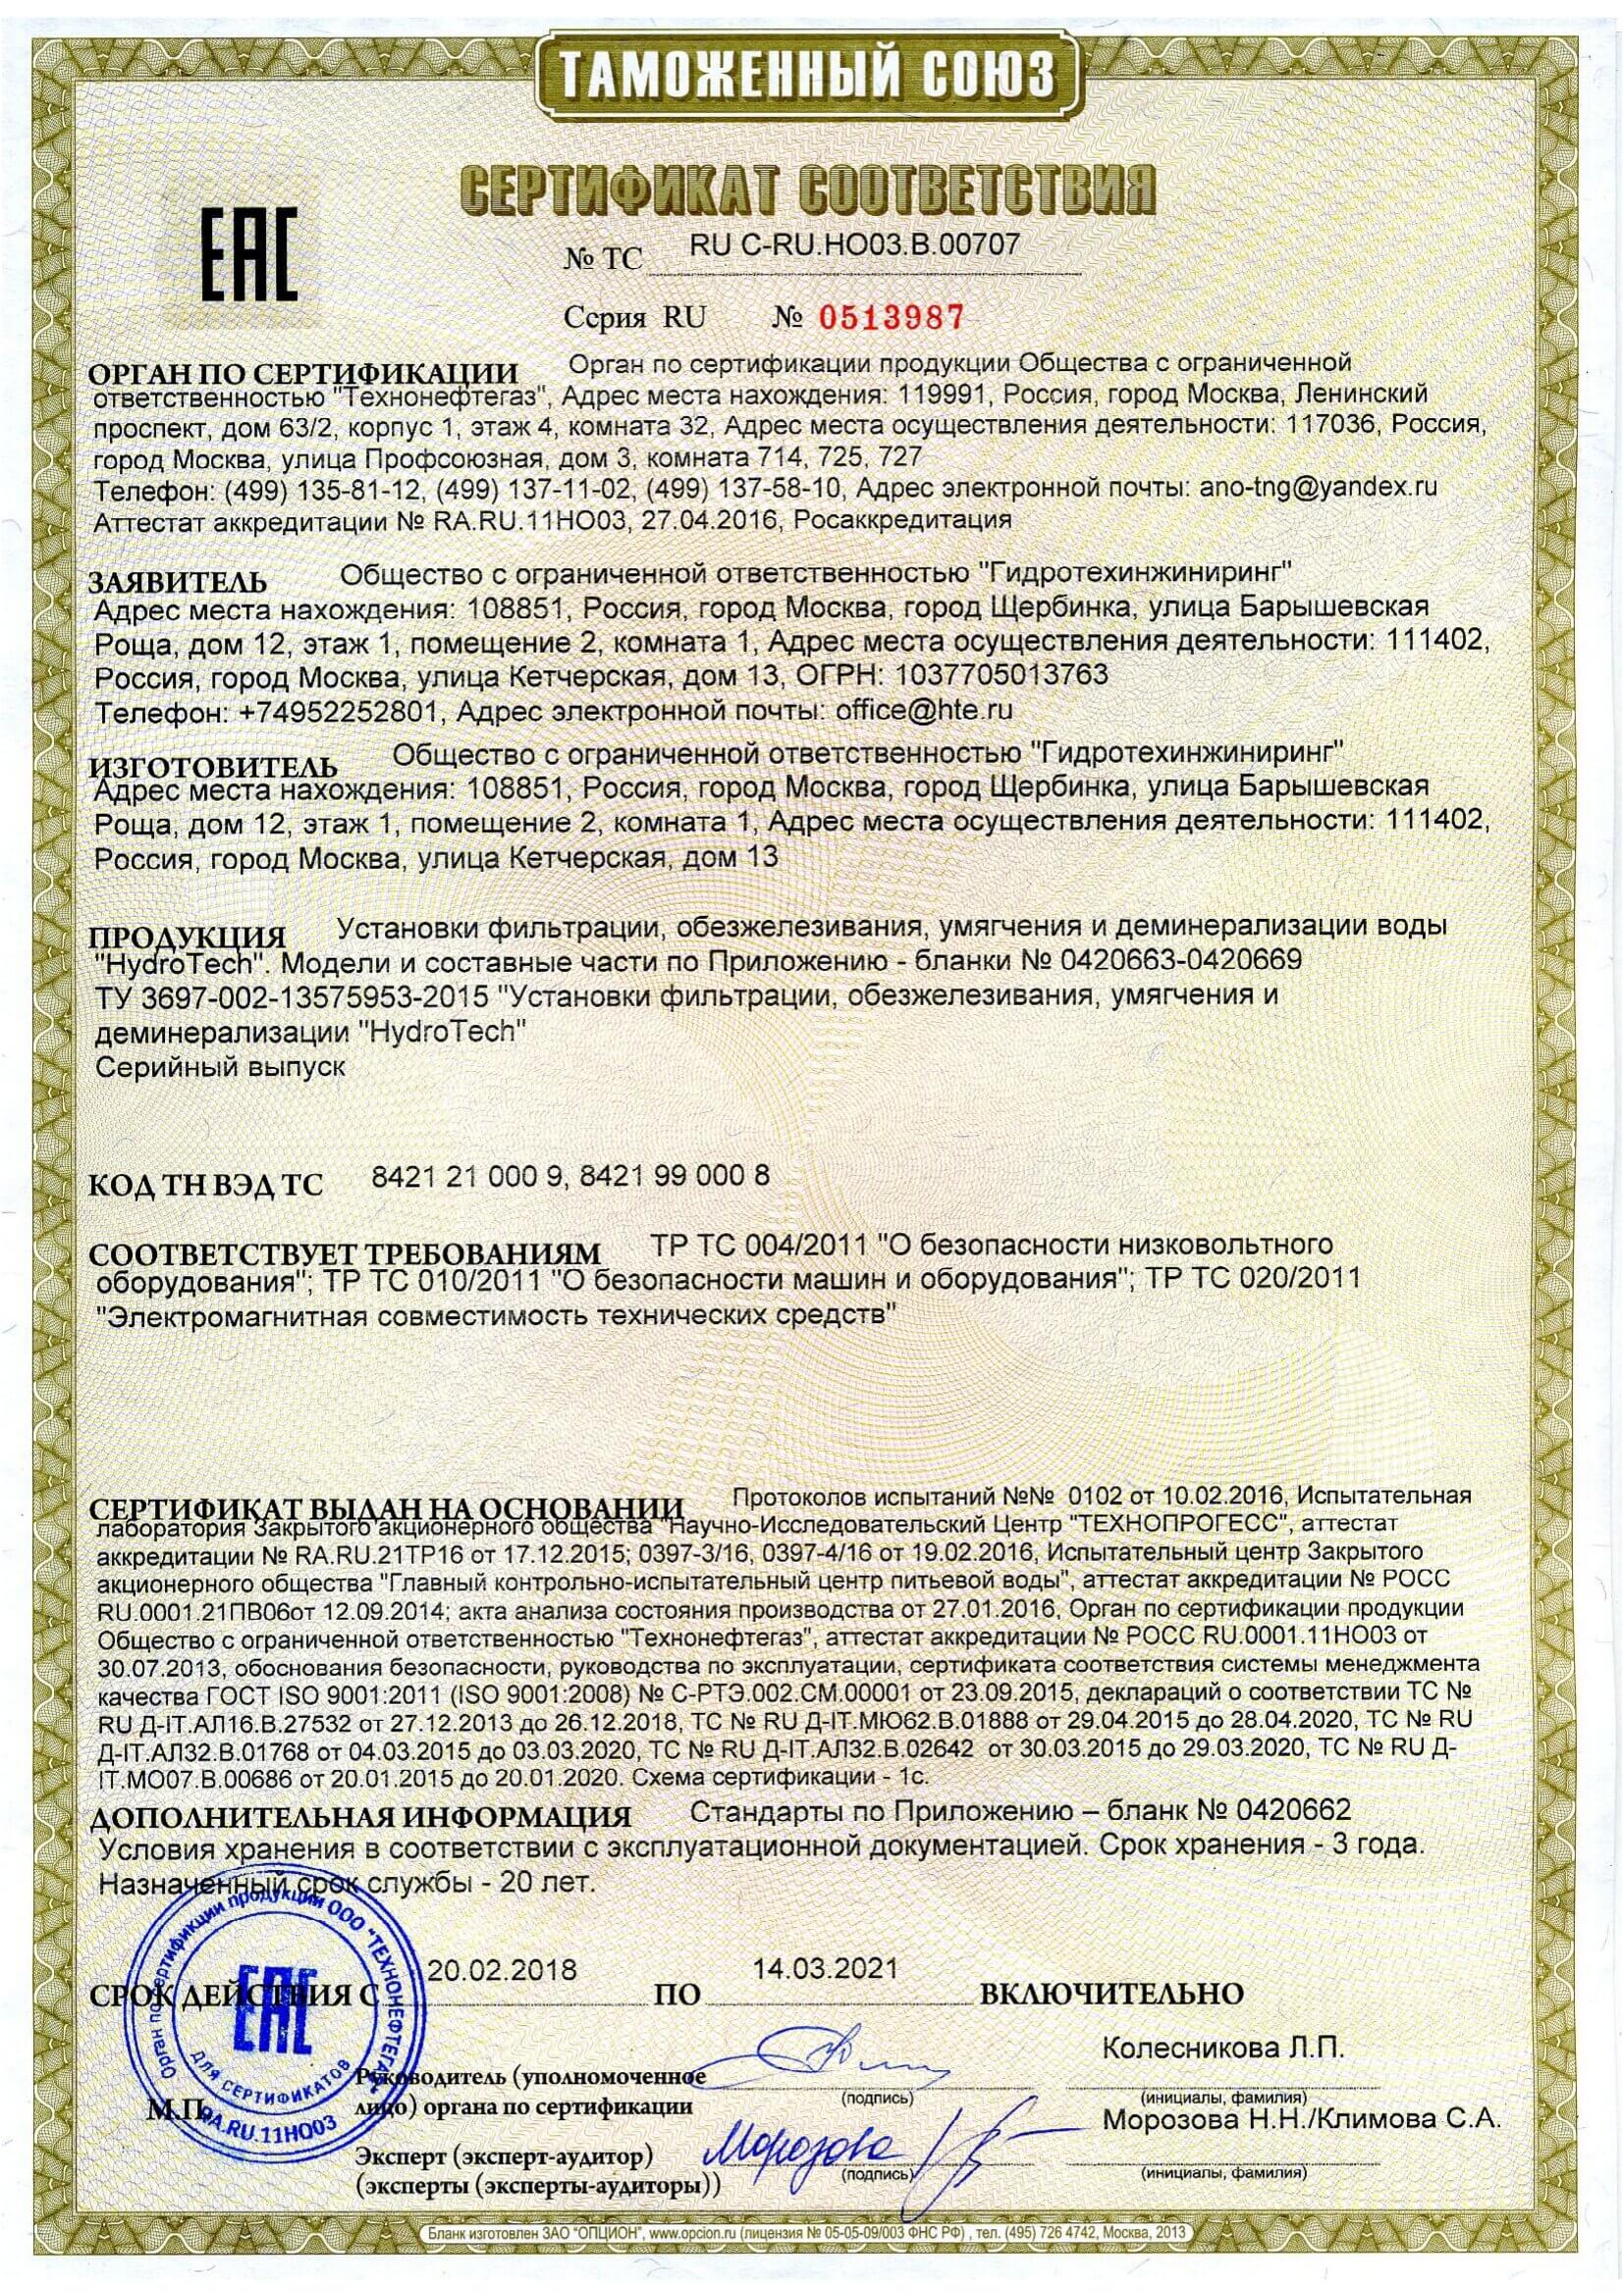 Общий сертификат по 14.03.2021 г.